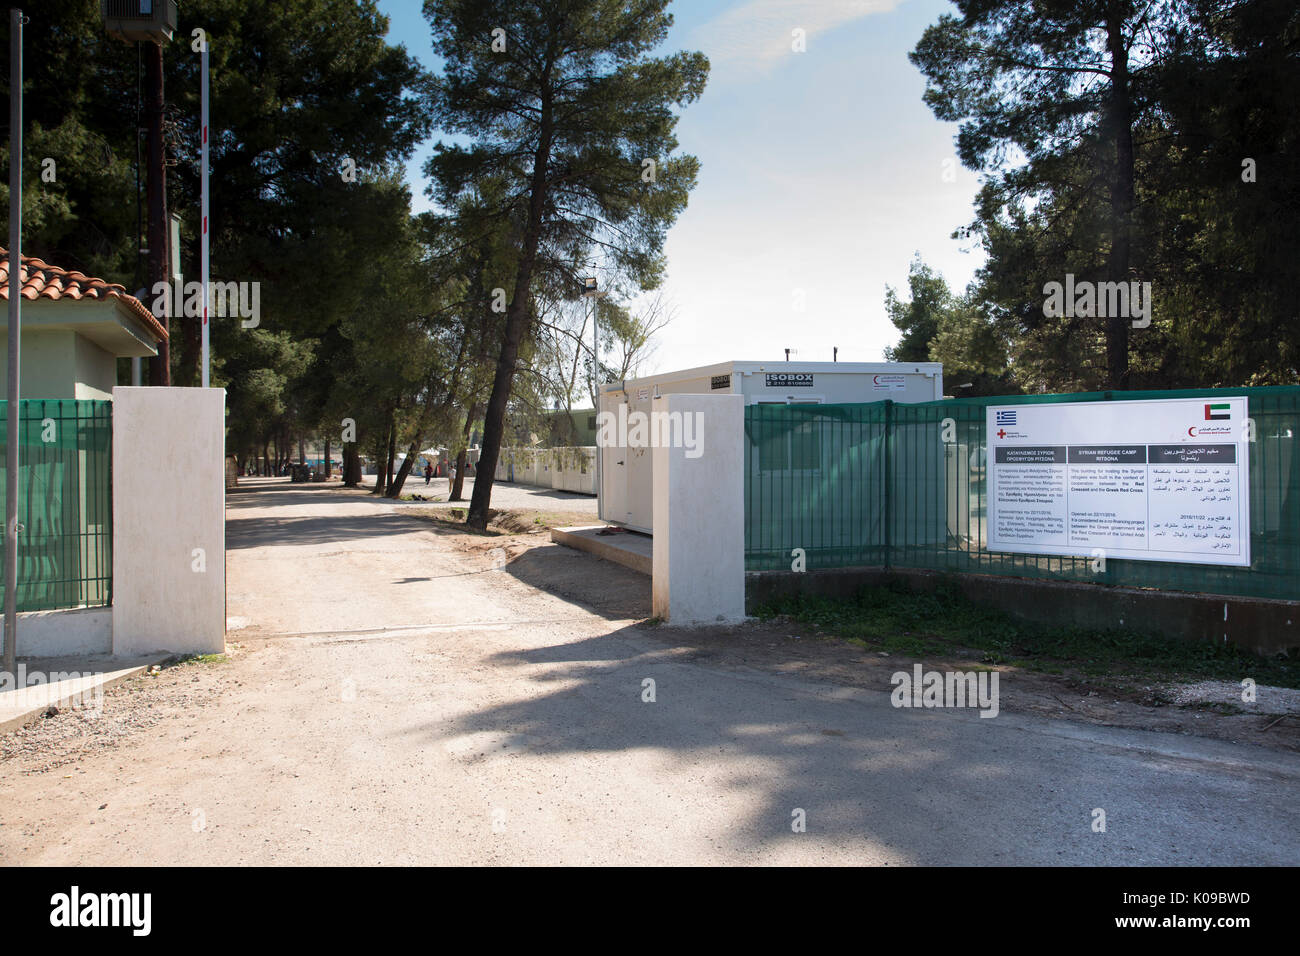 Porte d'entrée du camp de réfugiés de Ritsona avec un signe en grec, anglais et arabe de coopération dit de grec de la Croix-Rouge et du Croissant-Rouge unis. Banque D'Images